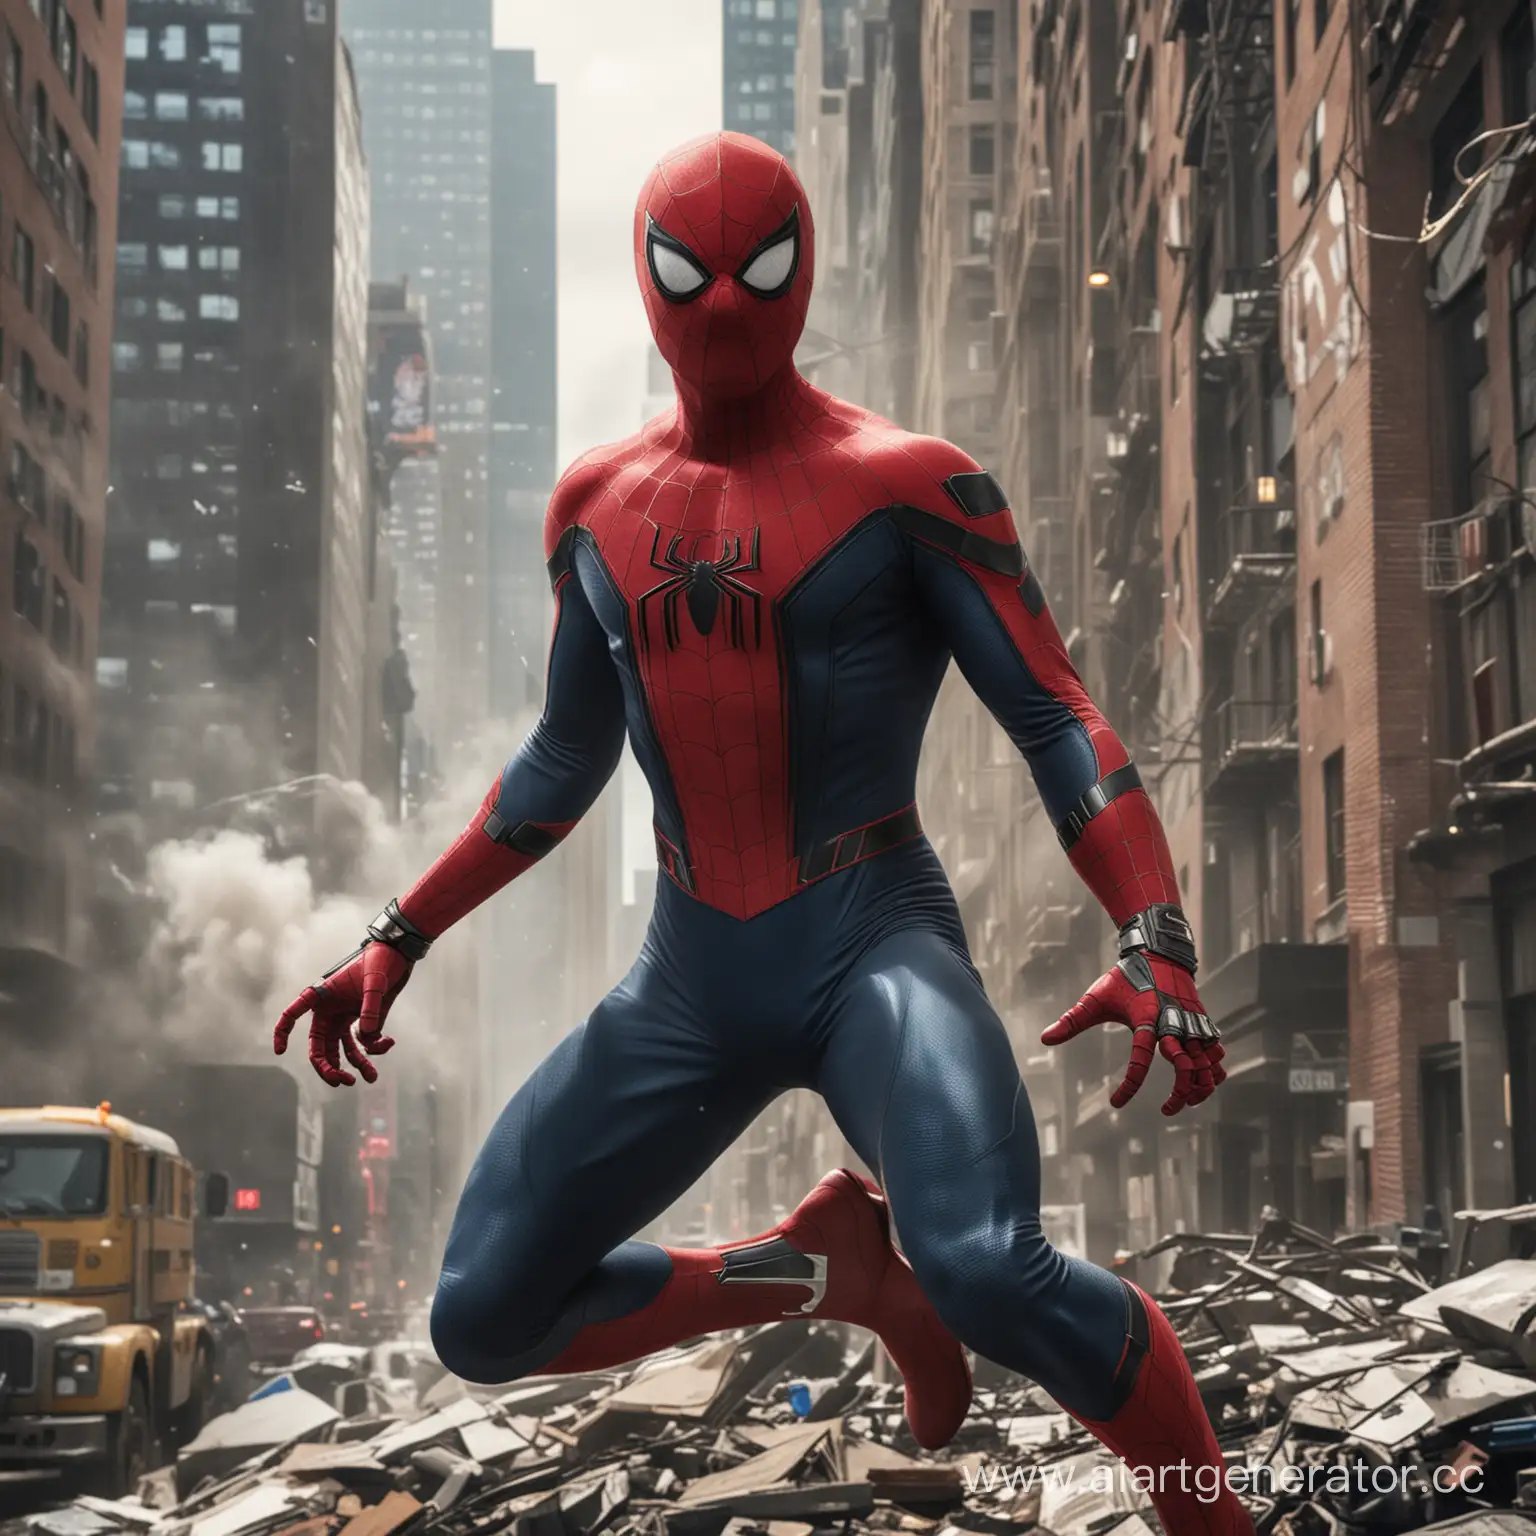 Параллельно с его ролью защитника Нью-Йорка, Питер Паркер, известный как Человек-паук, работает в компании "Техносоюз" в качестве разработчика программного обеспечения. По сути, он является двойным агентом, когда надевает свой костюм и превращается в Человека-паука, чтобы бороться с преступностью.